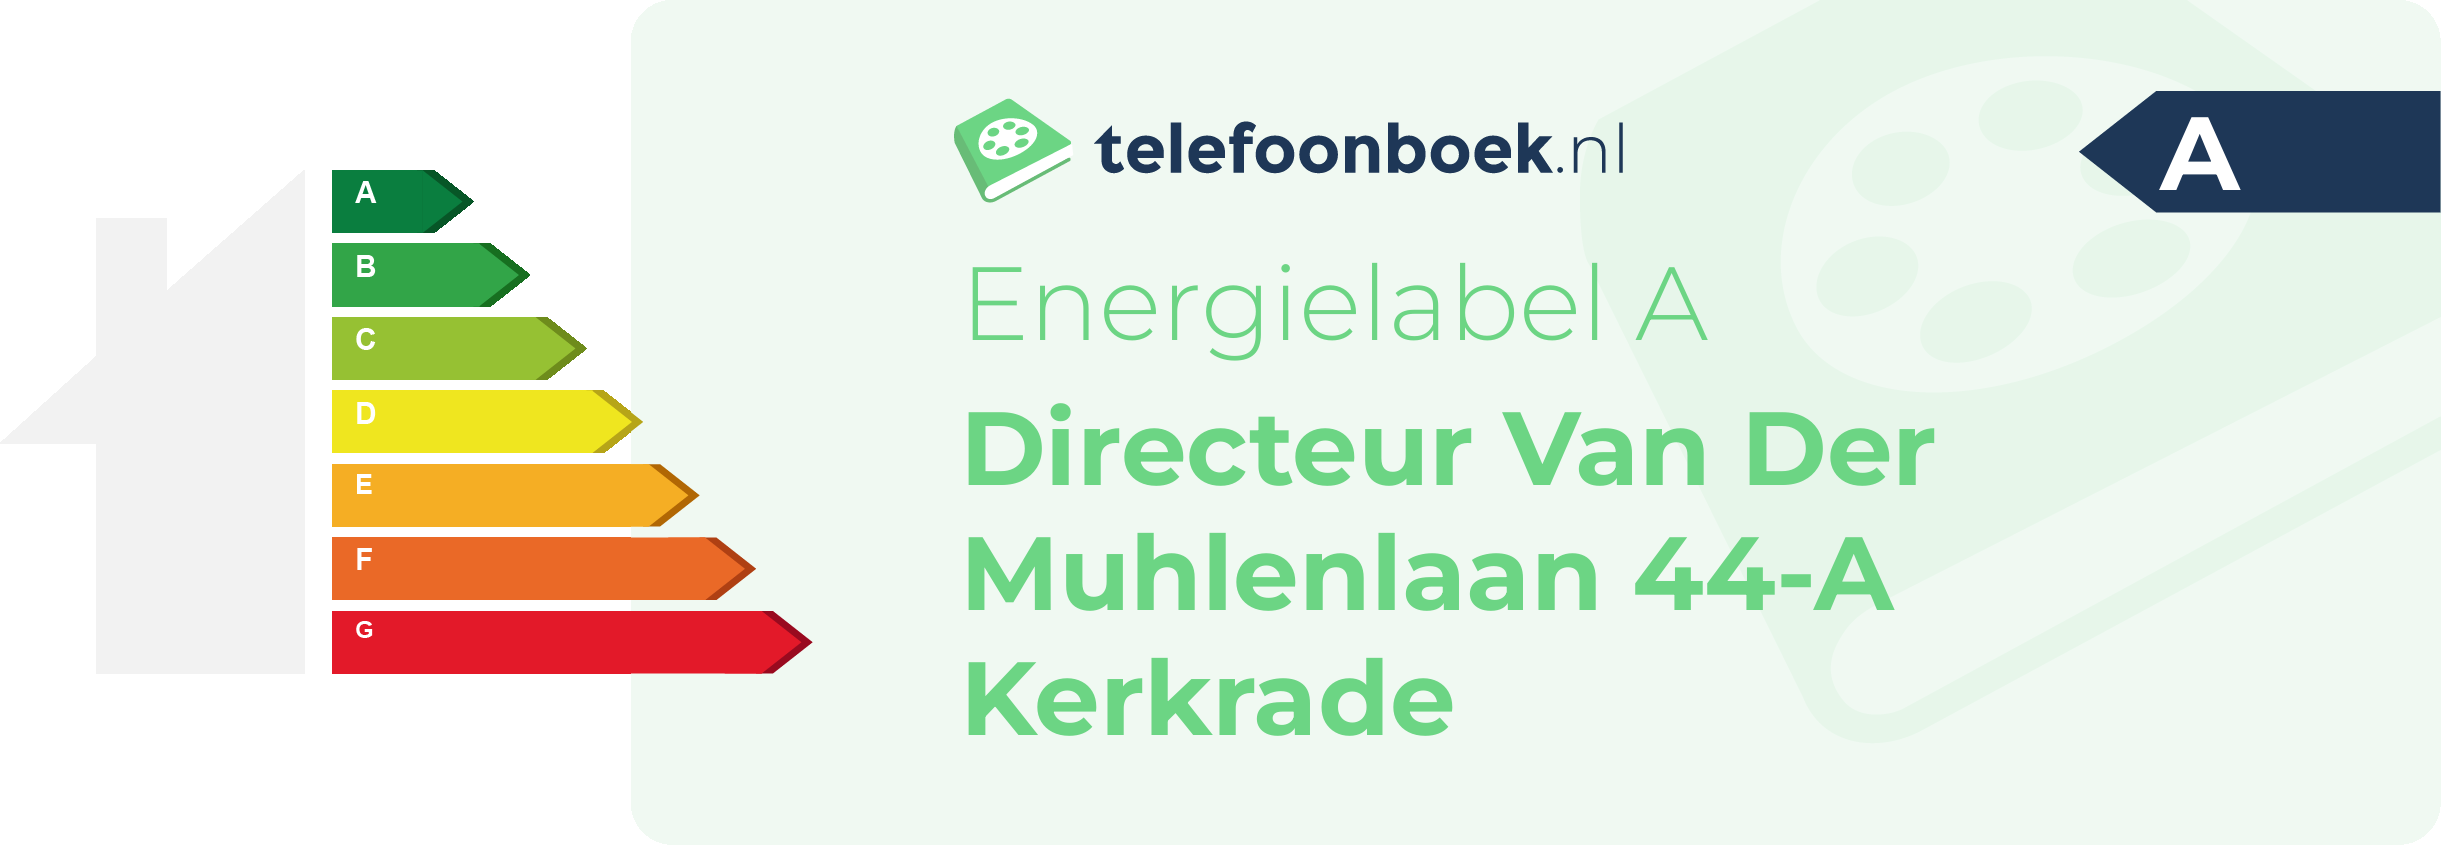 Energielabel Directeur Van Der Muhlenlaan 44-A Kerkrade